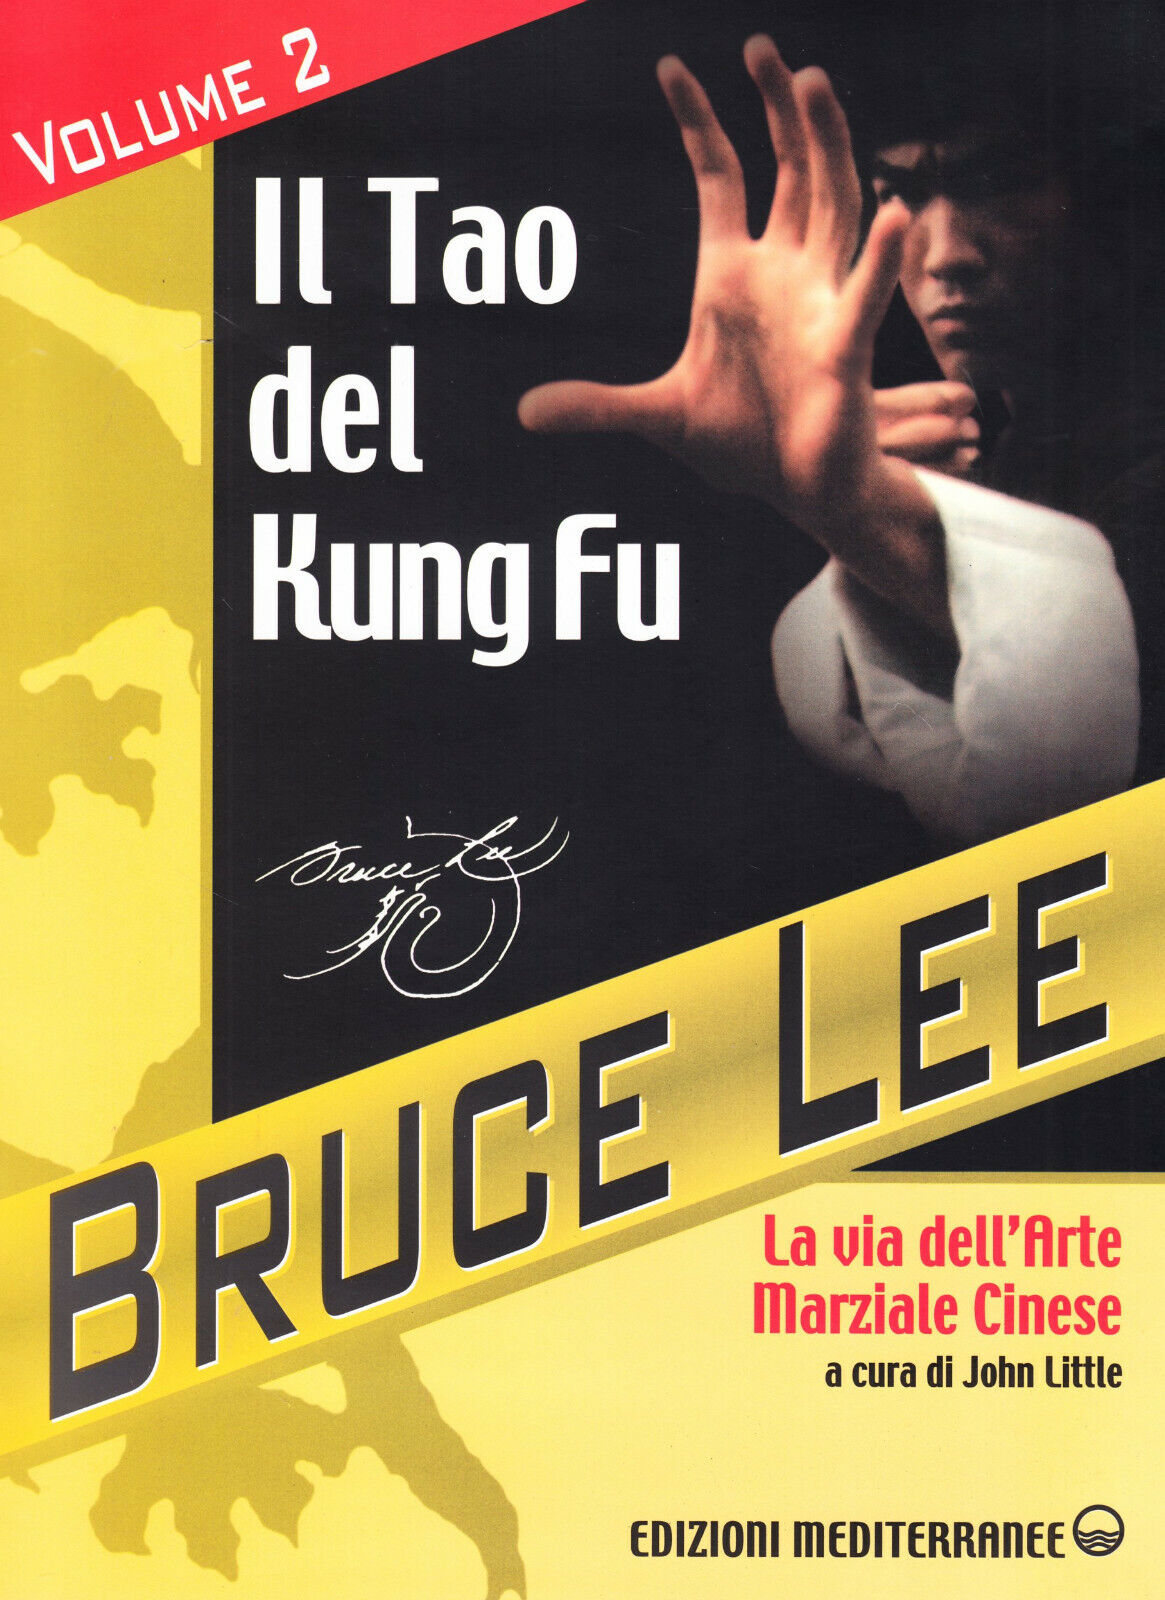 BRUCE LEE - Il Tao del Kung Fu, volume 2 - Edizione Mediterranee, 2000 libro usato